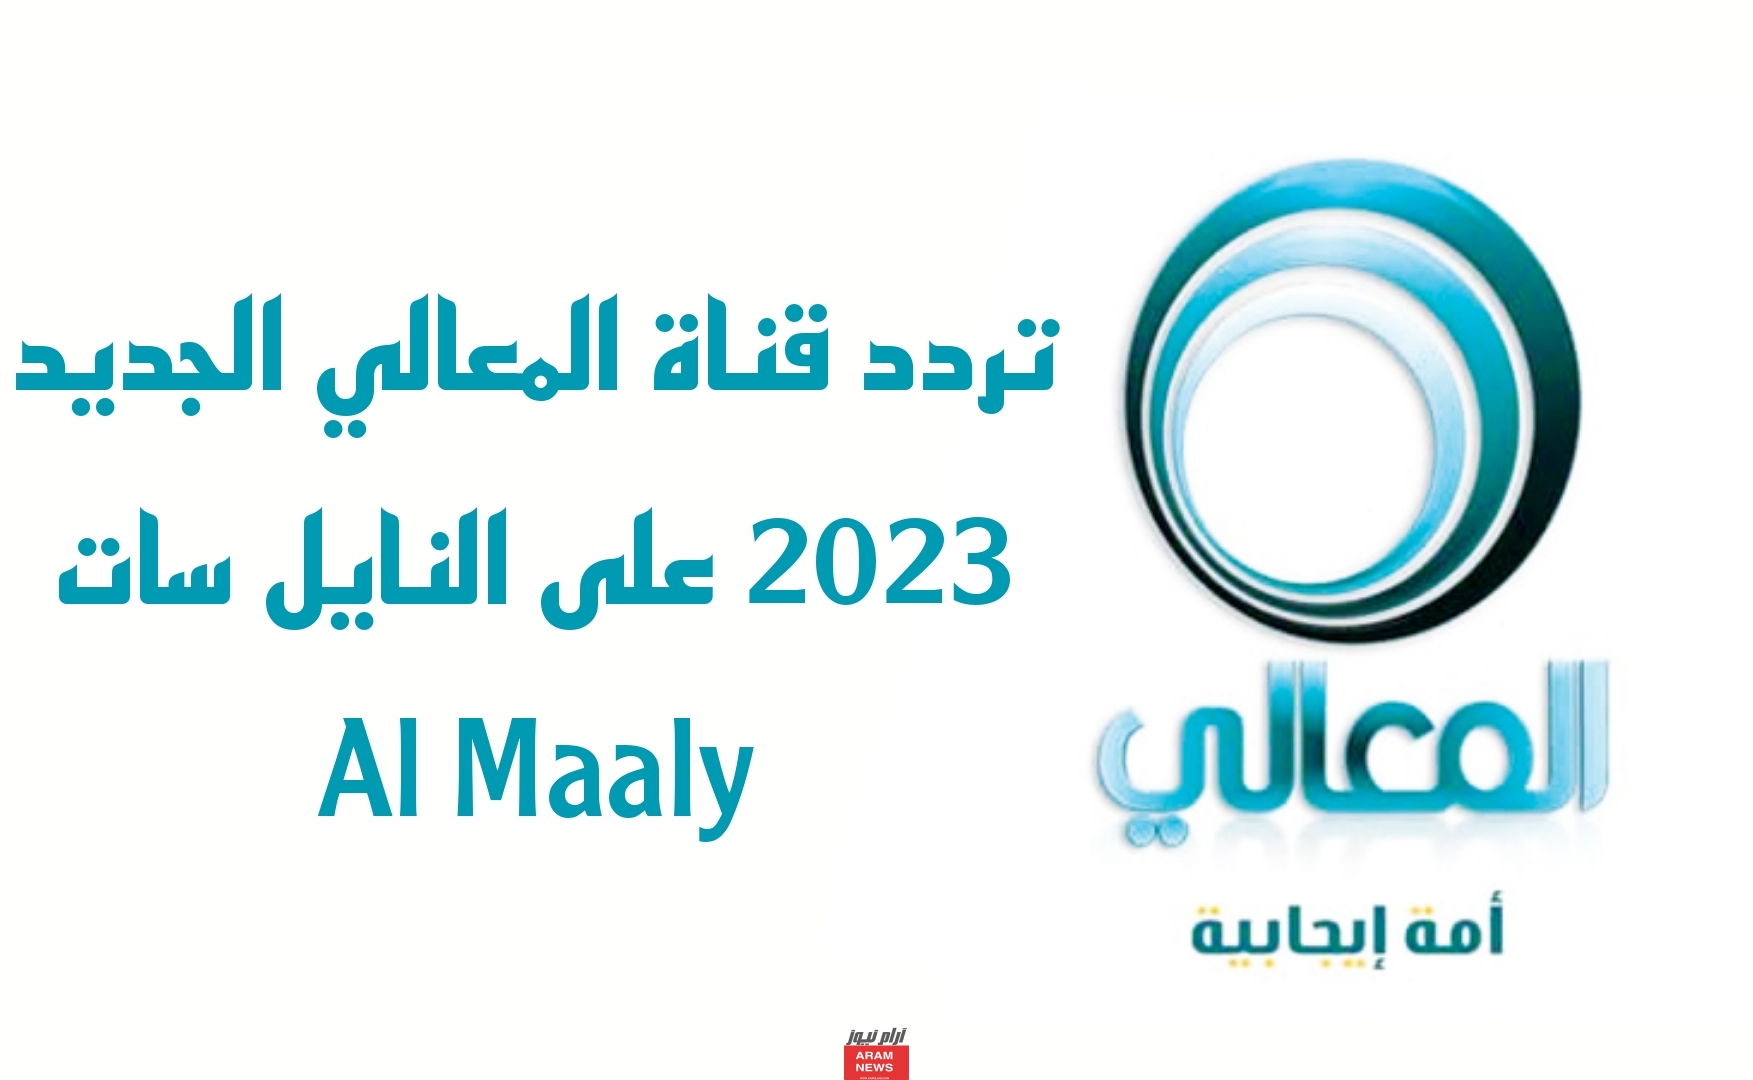 تردد قناة المعالي الجديد على النايل سات Al Maaly